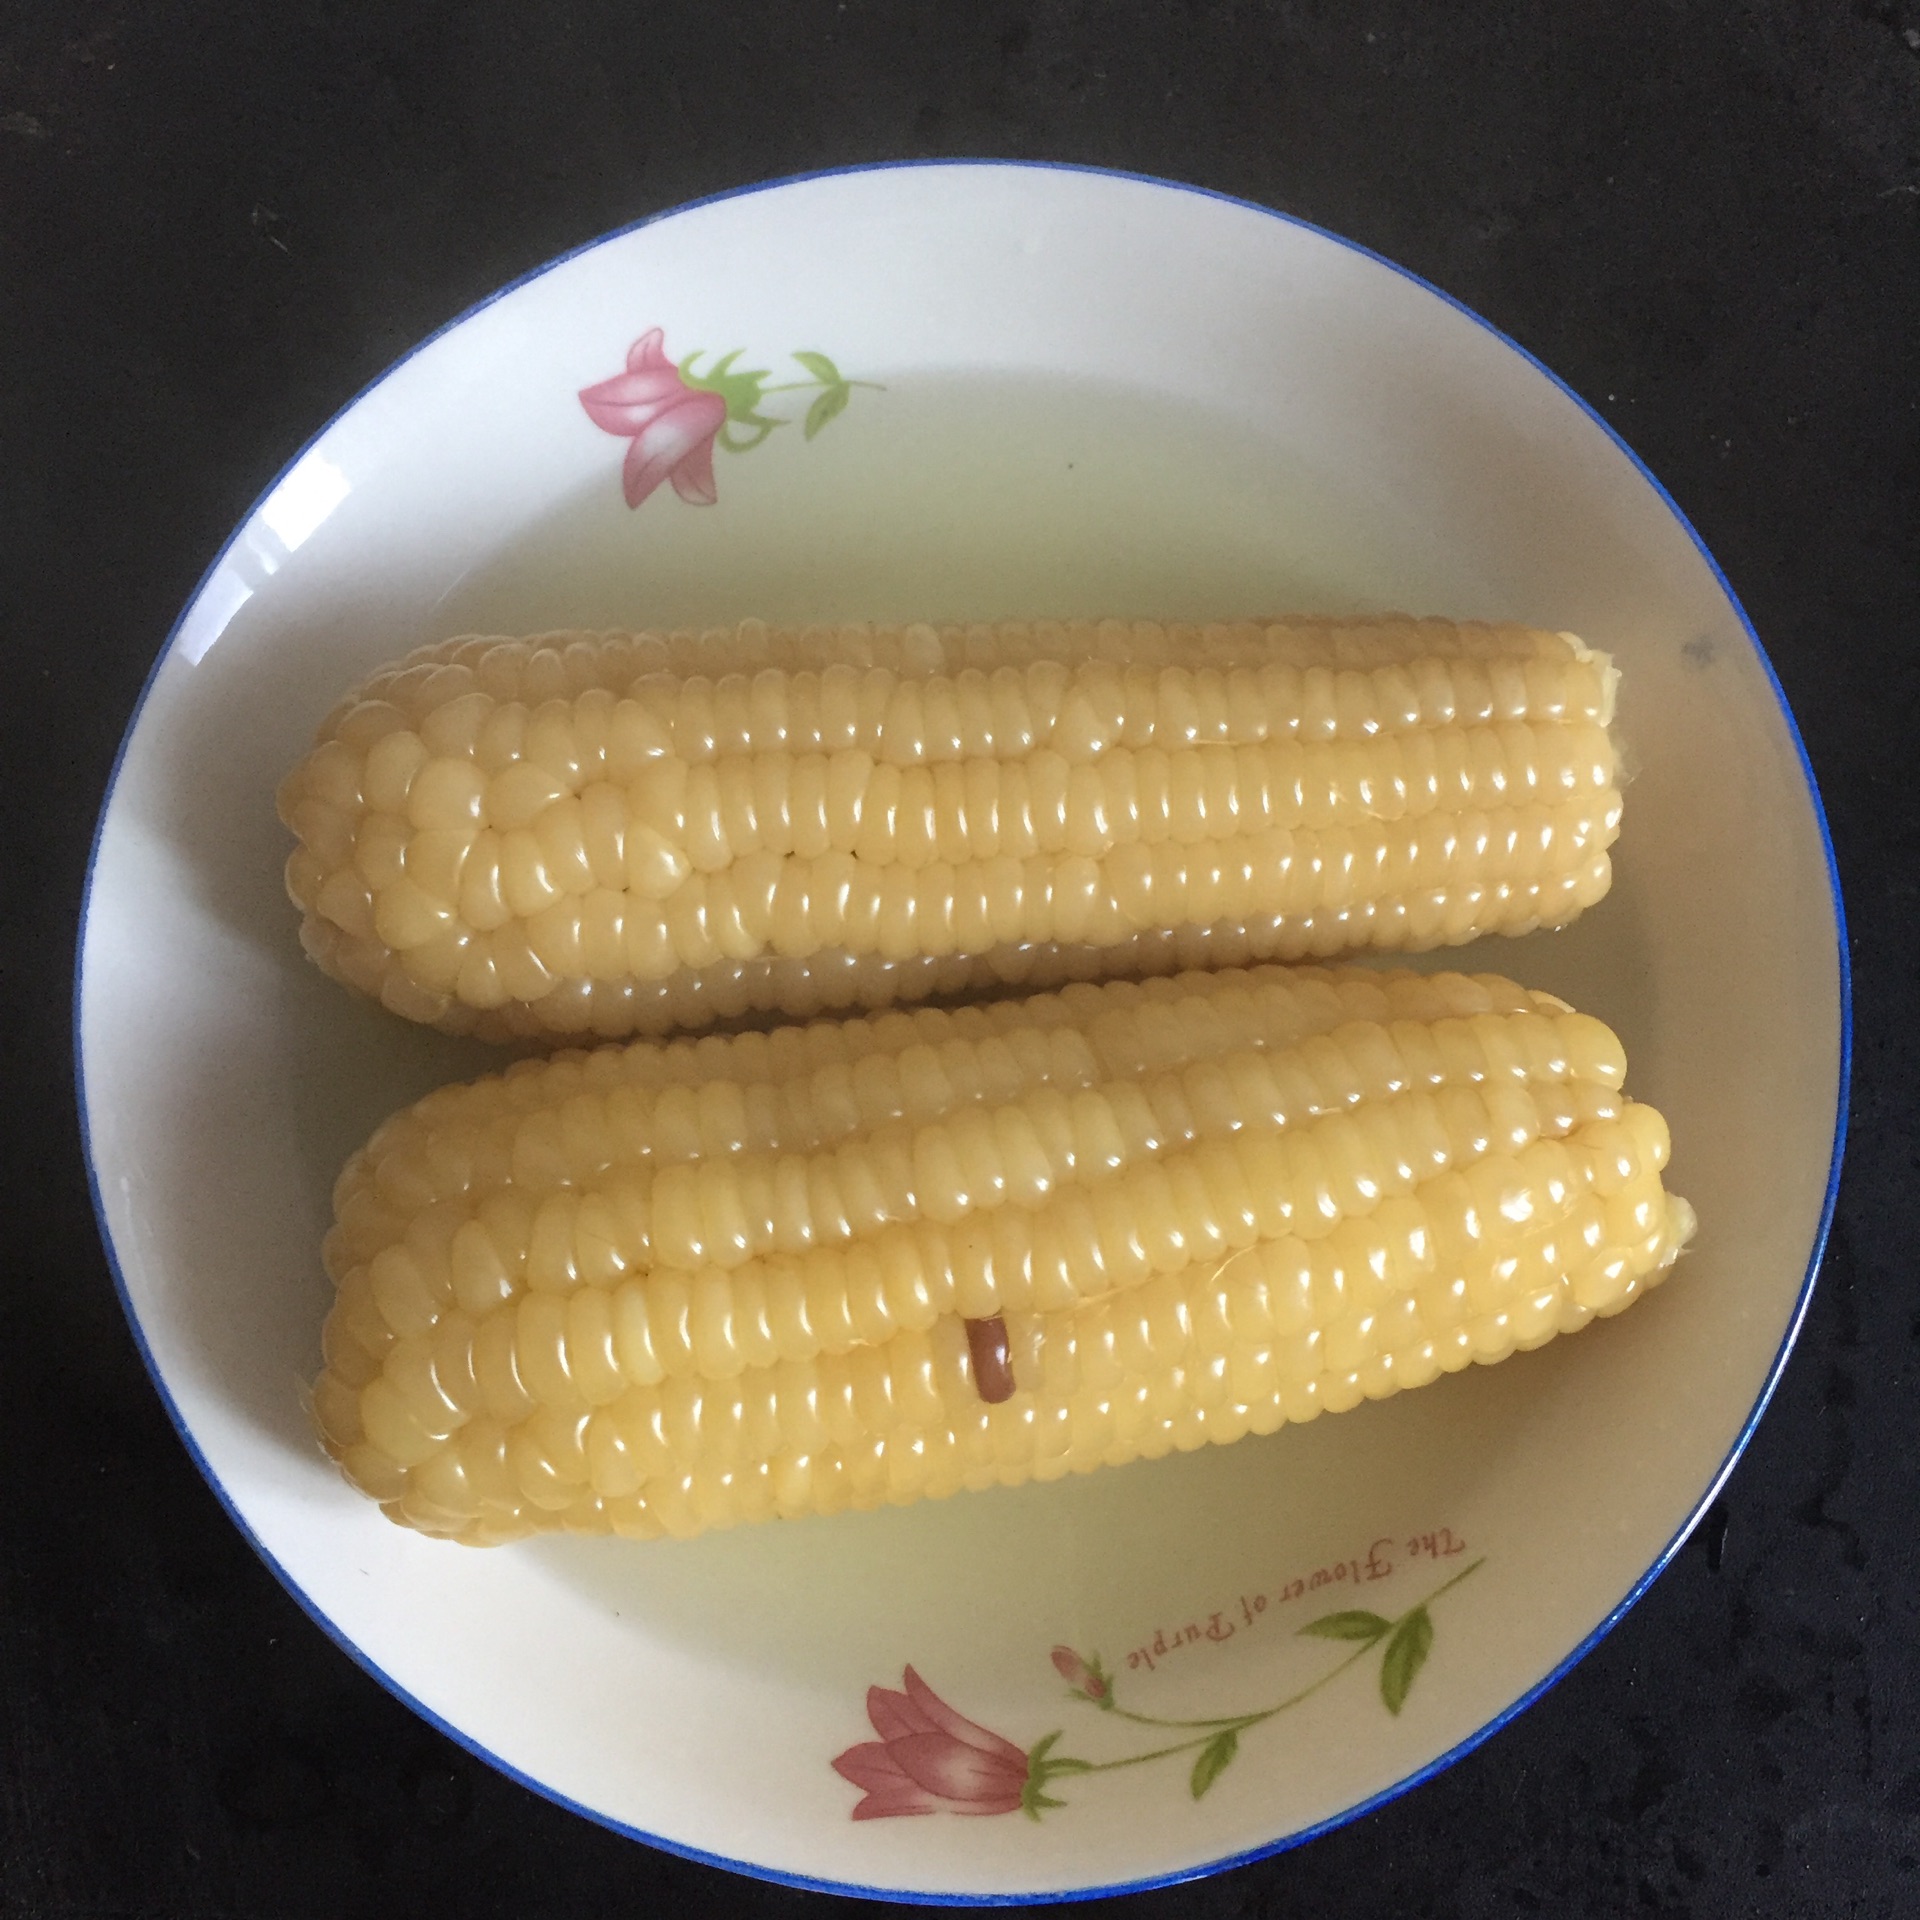 碗上有个熟玉米的图片图片